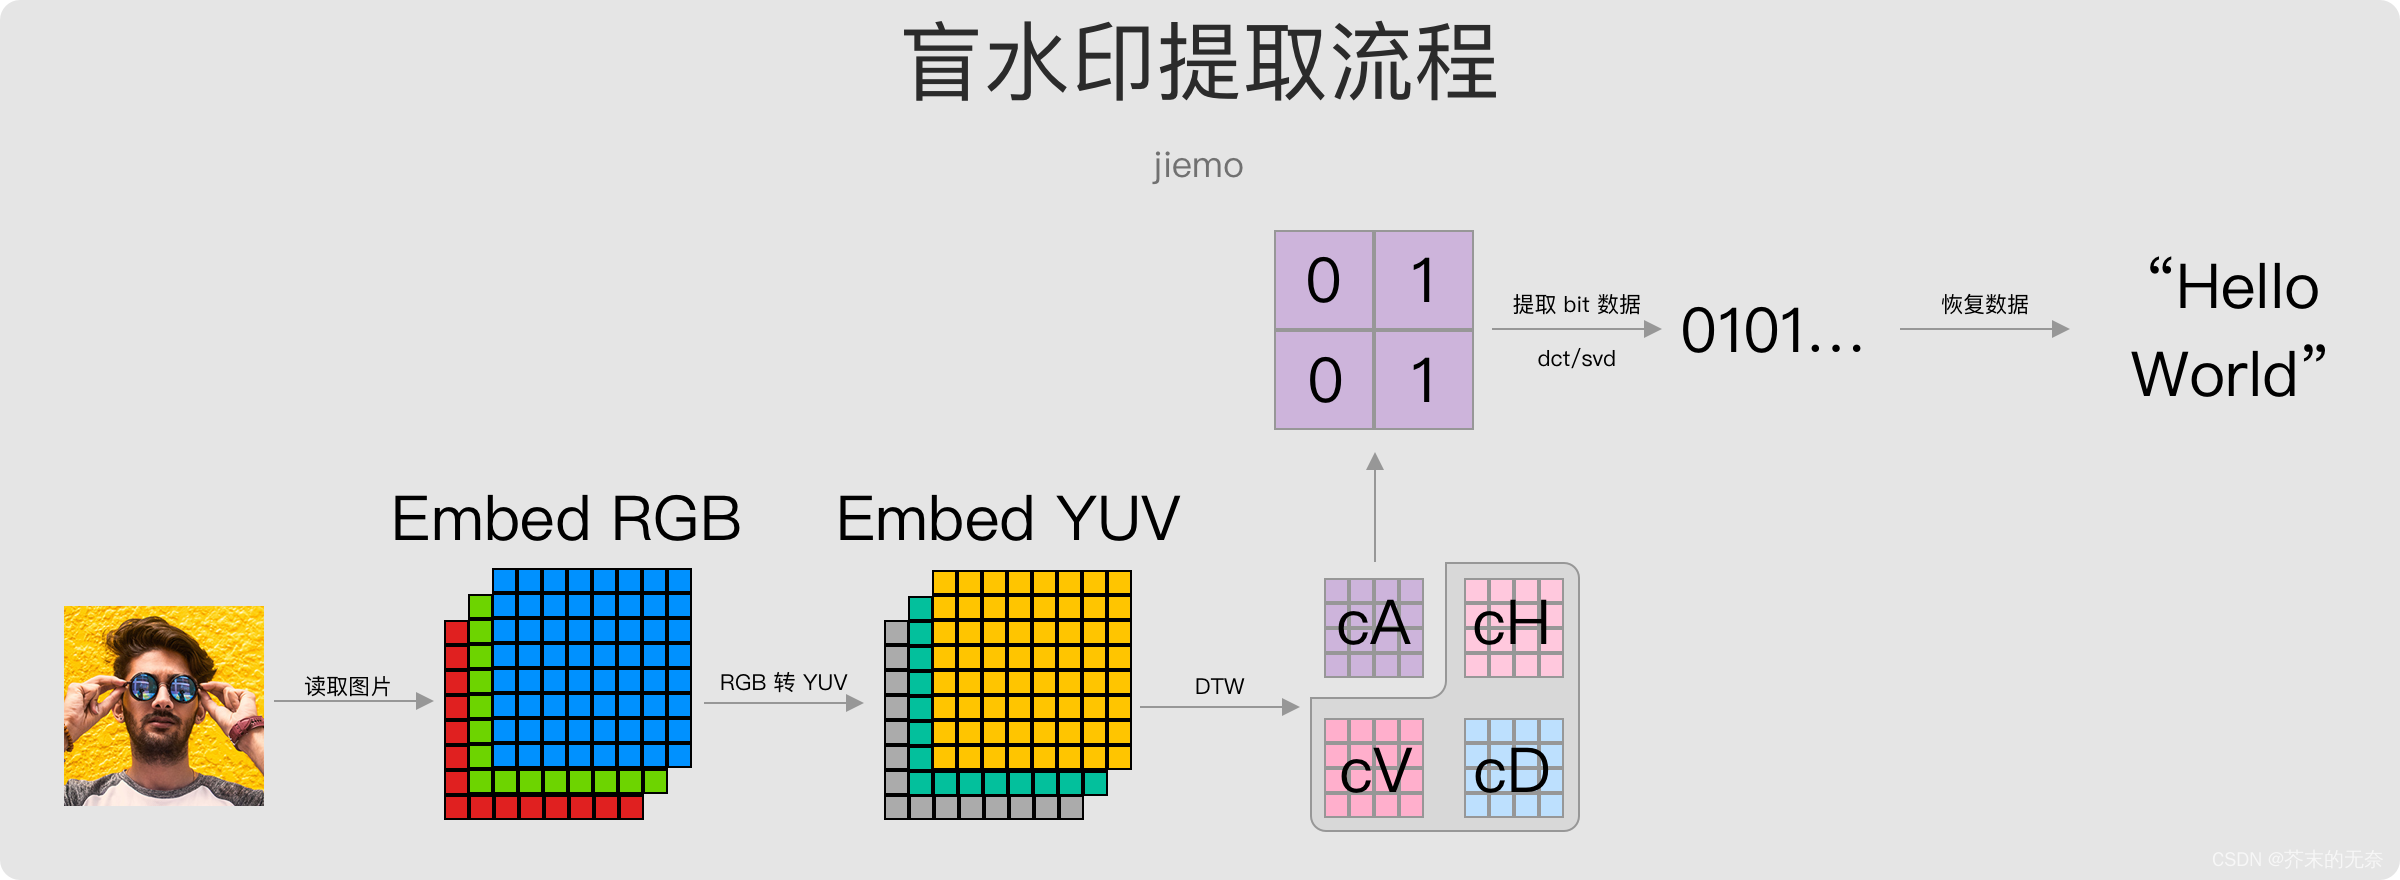 盲水印、暗水印（Blind Watermark）算法简明教程：算法原理、流程以及基于C/C++ 的代码实现